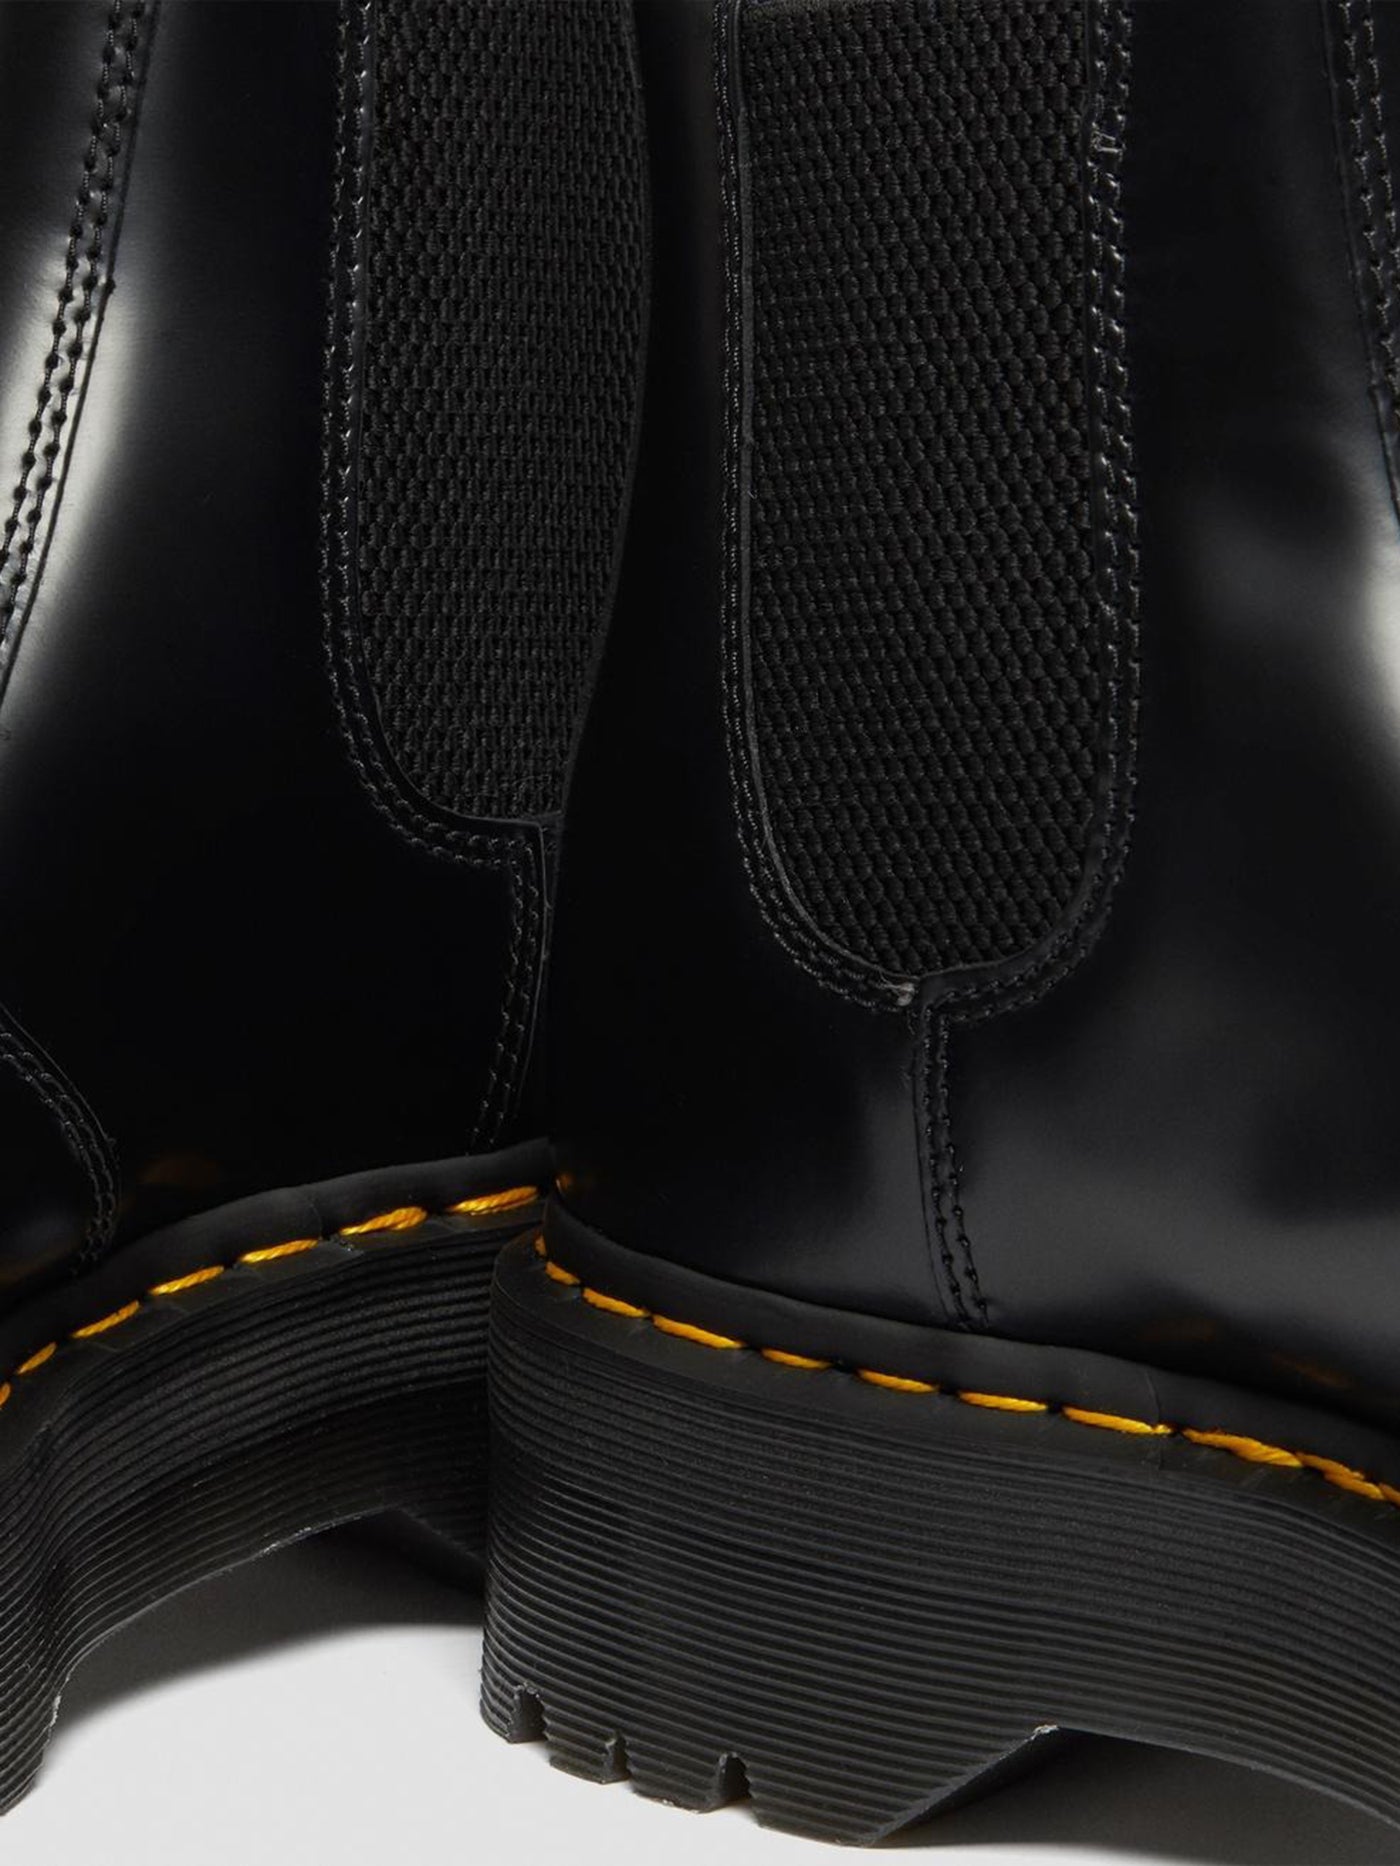 Dr. Martens 2976 Quad Polished Smooth Black Boots